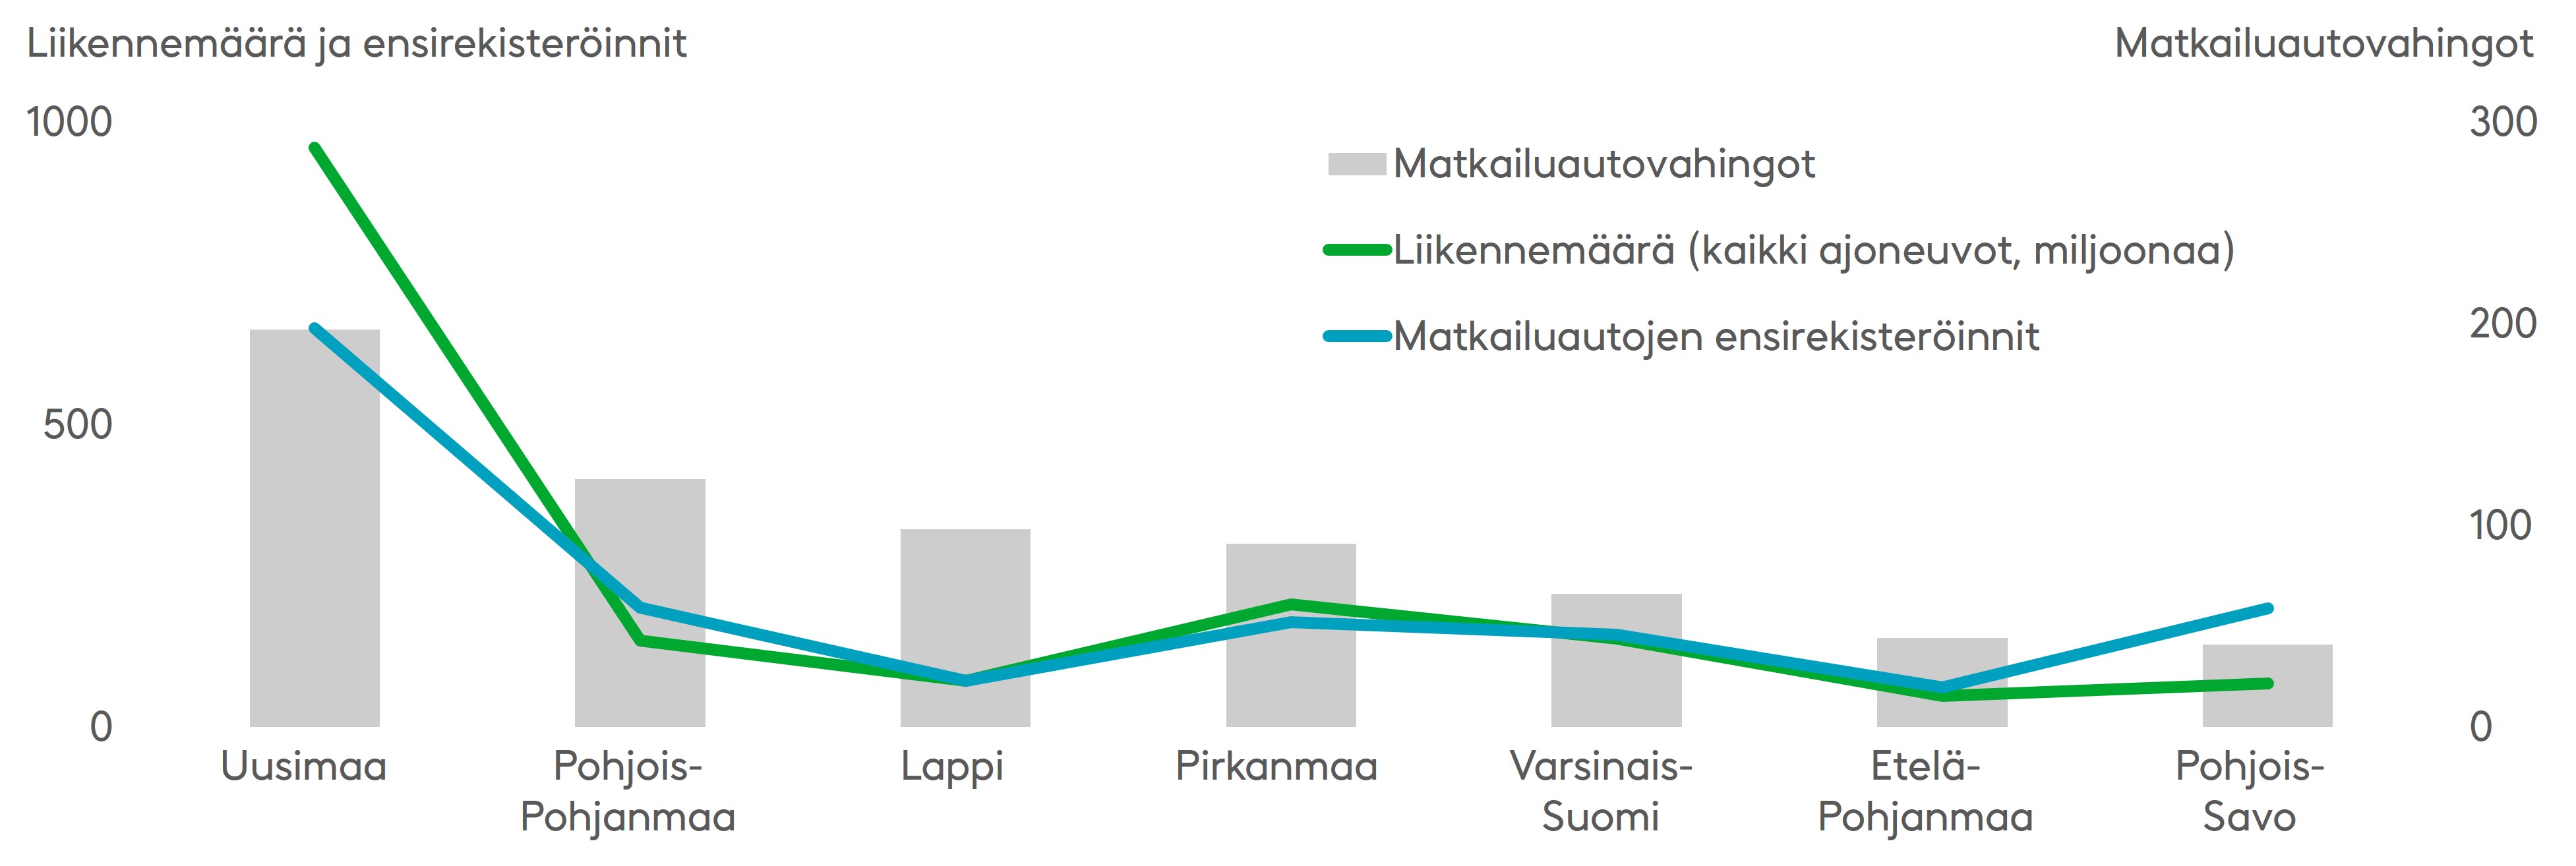 Eniten liikennevakuutuksesta korvattuja matkailuautovahinkoja kirjattiin vuonna 2020 Uudellamaalla, Pohjois-Pohjanmaalla, Lapissa ja Pirkanmaalla. Maakunnissa, joissa matkailuautovahinkoja tapahtuu eniten, on myös paljon liikennemääriä ja rekisteröityjä matkailuautoja. Poikkeuksena on Lappi, jossa on vähän liikennettä ja matkailuautoja, mutta joka on suosittu matkailuautokohde. Lähde: Onnettomuustietokeskus OTI